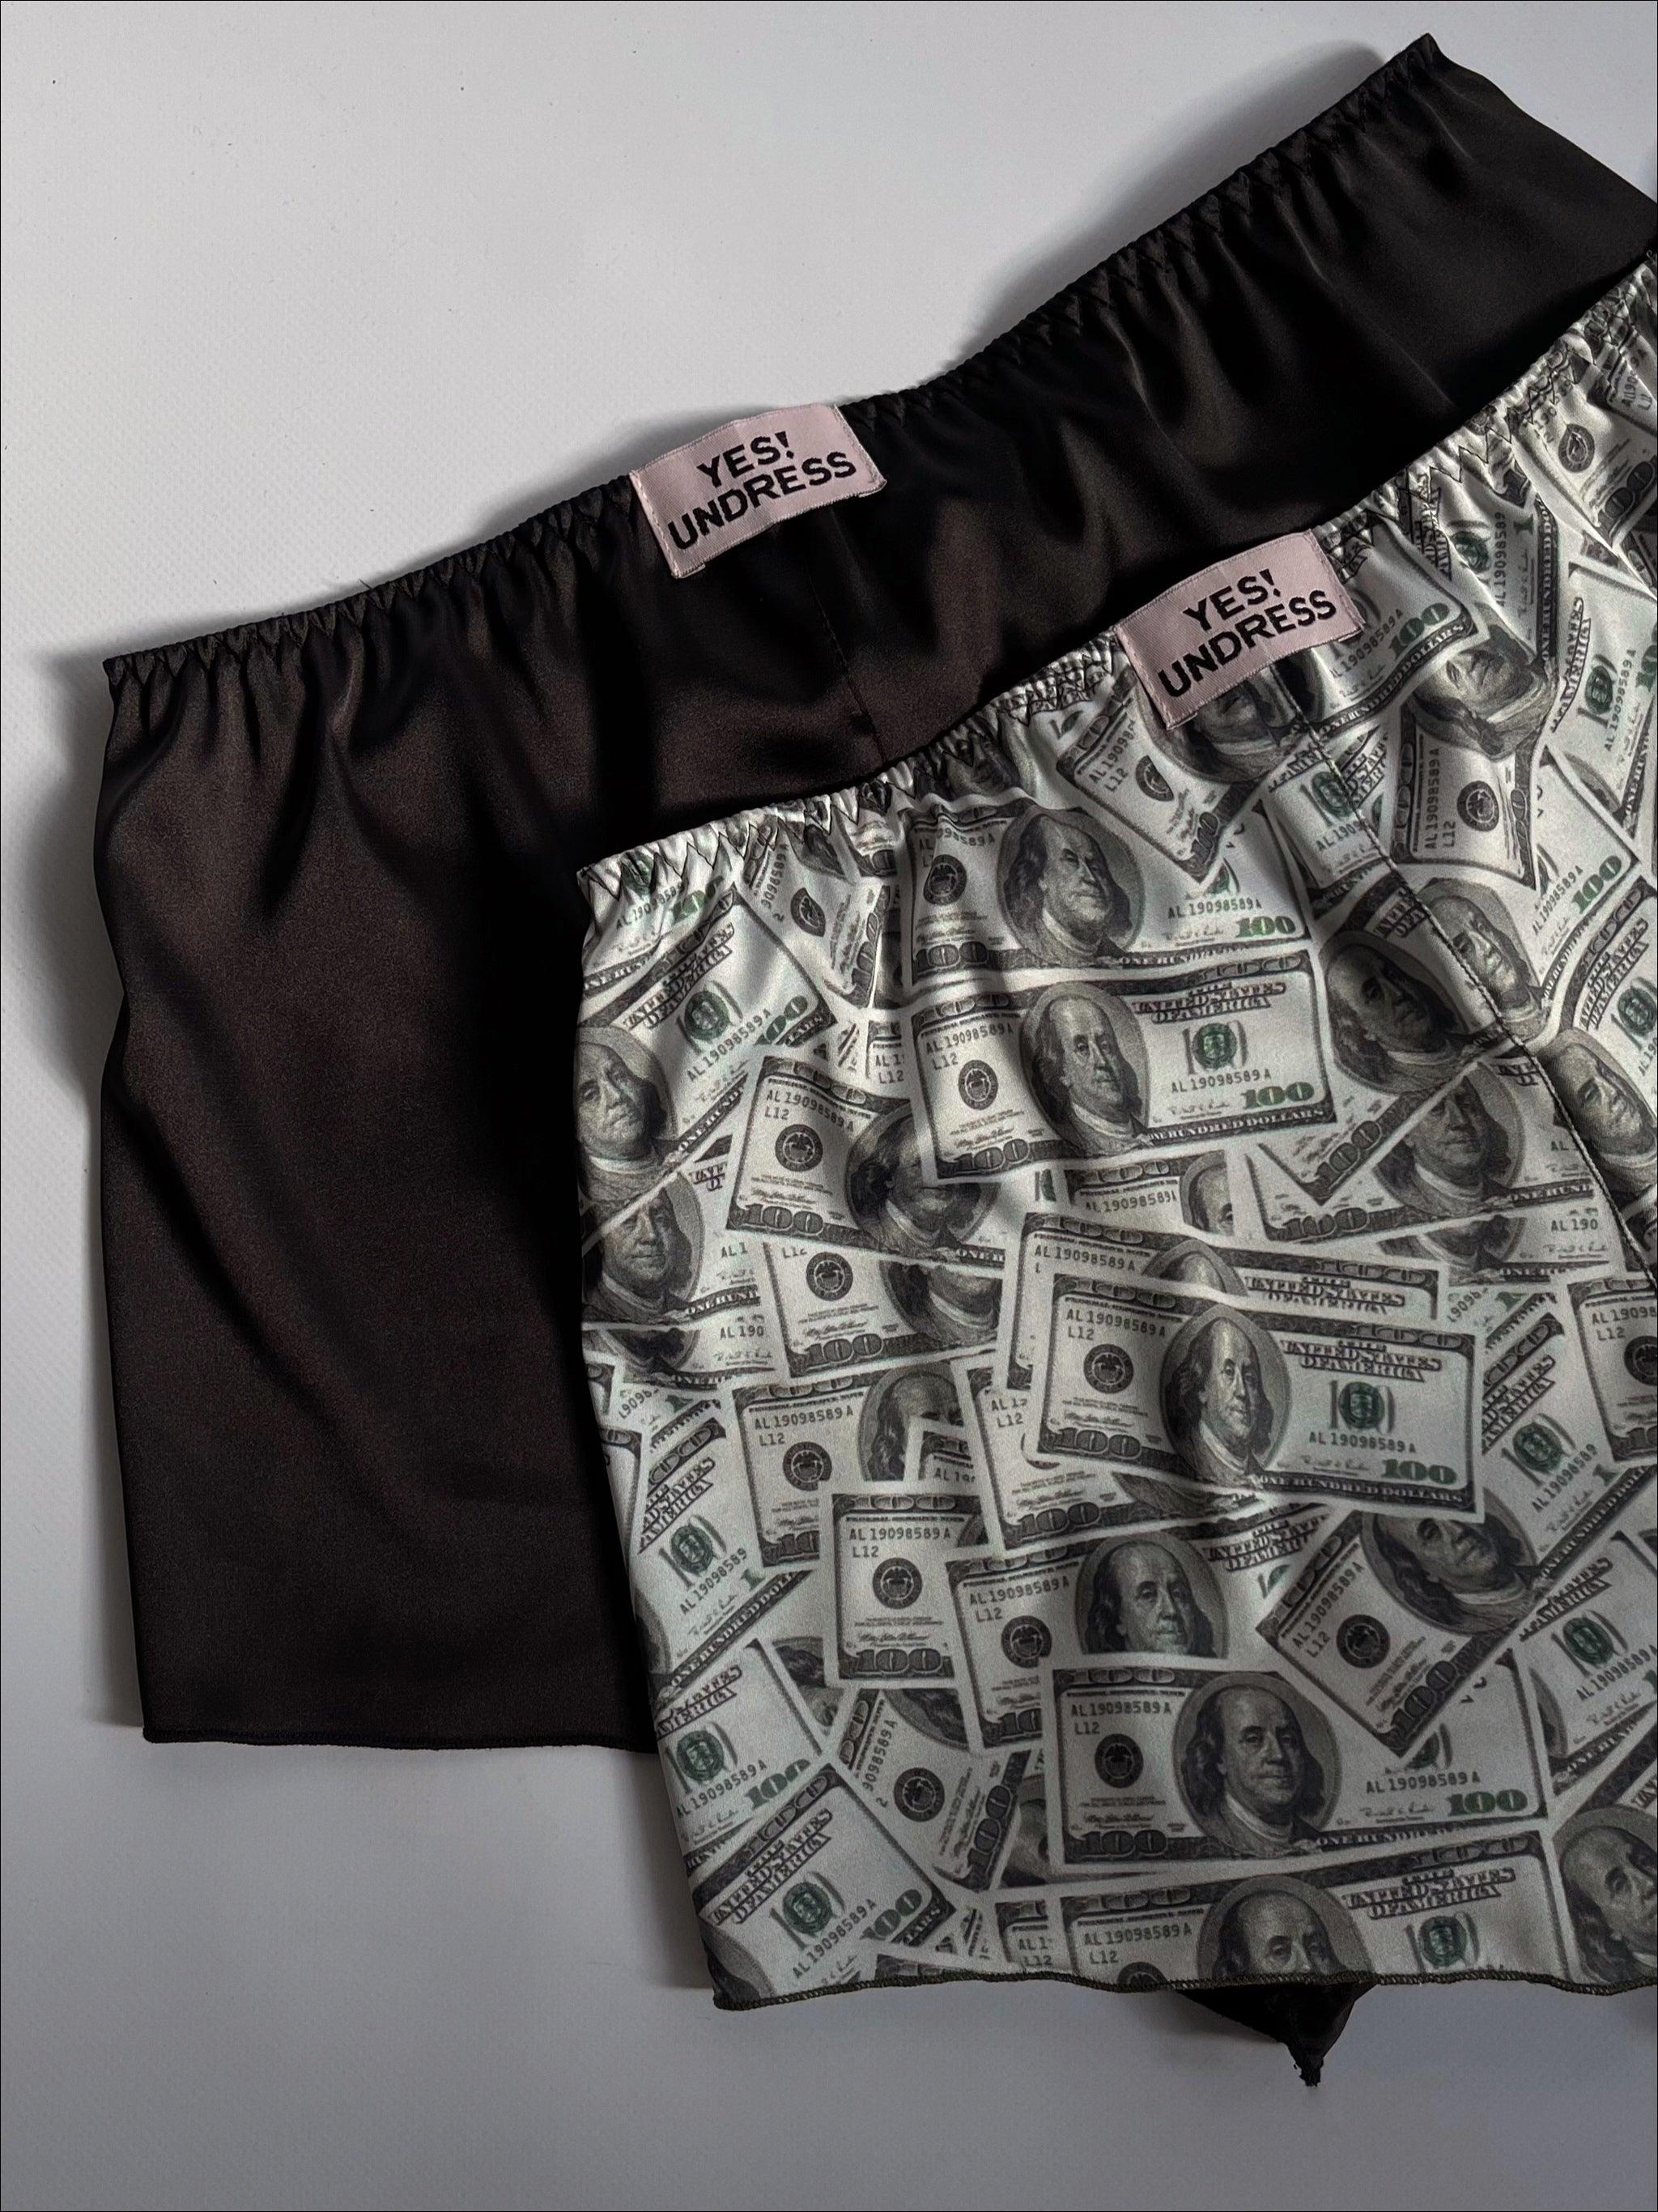 Kiki money shorts - yesUndress